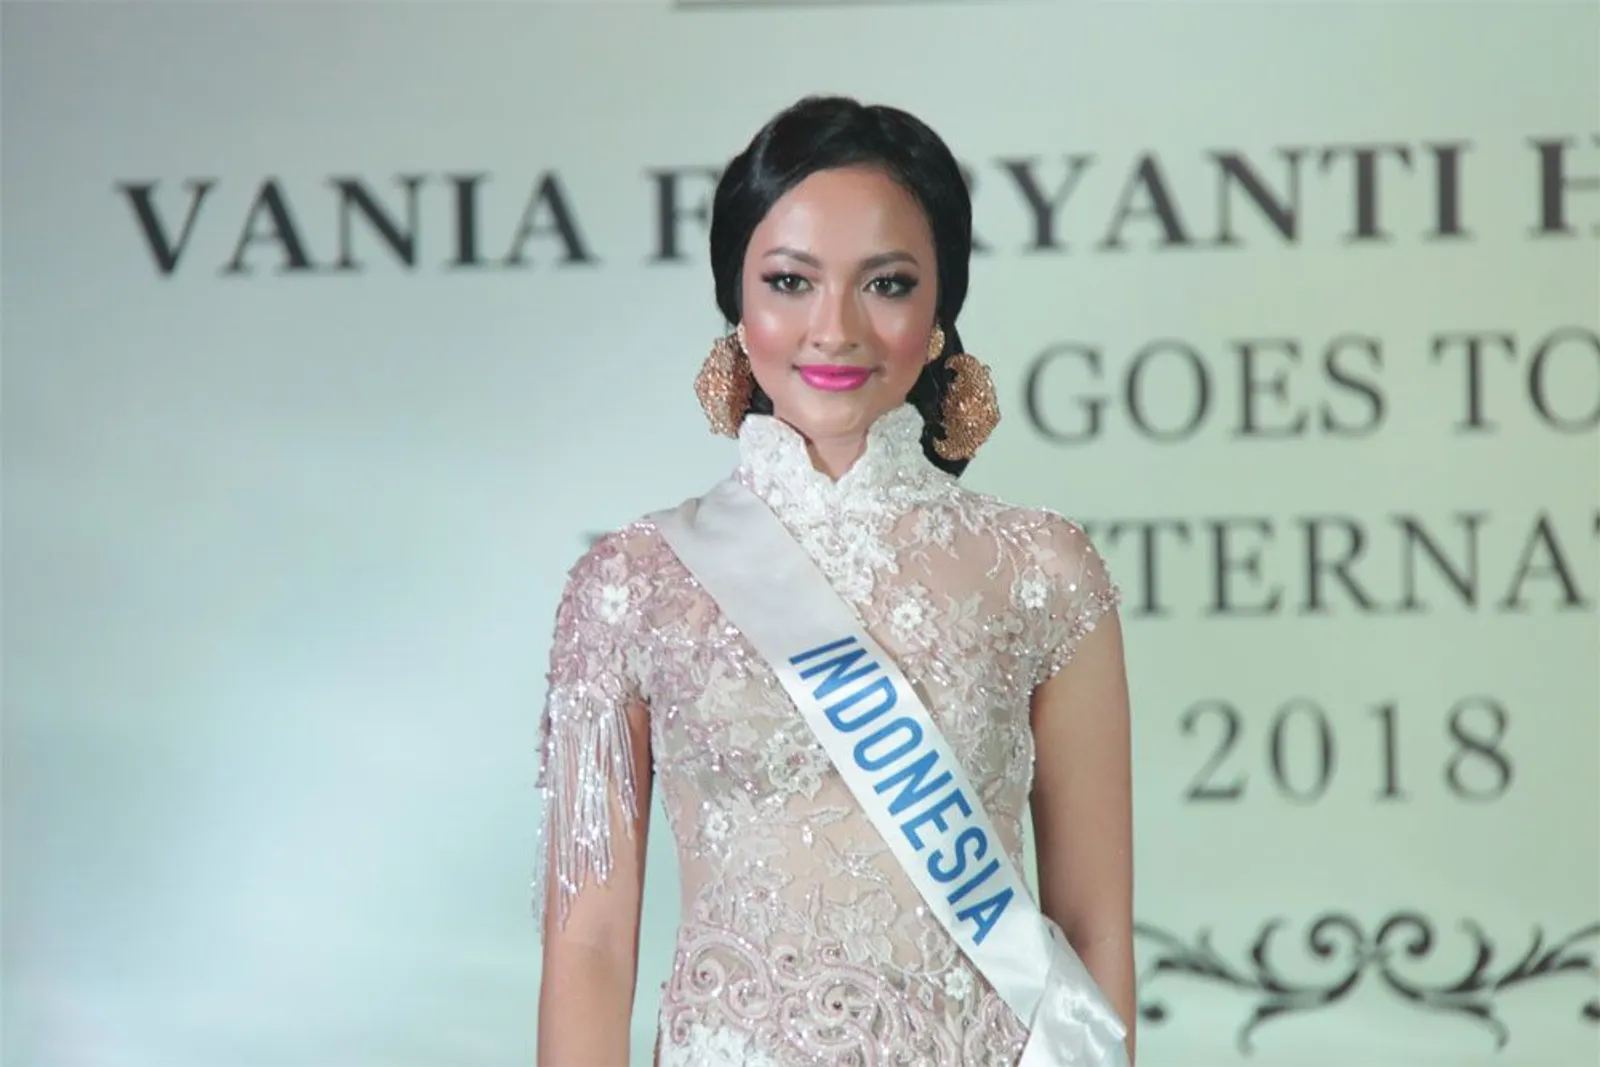 Vania Fitryanti Herlambang Siap Berlaga di Miss International 2018 